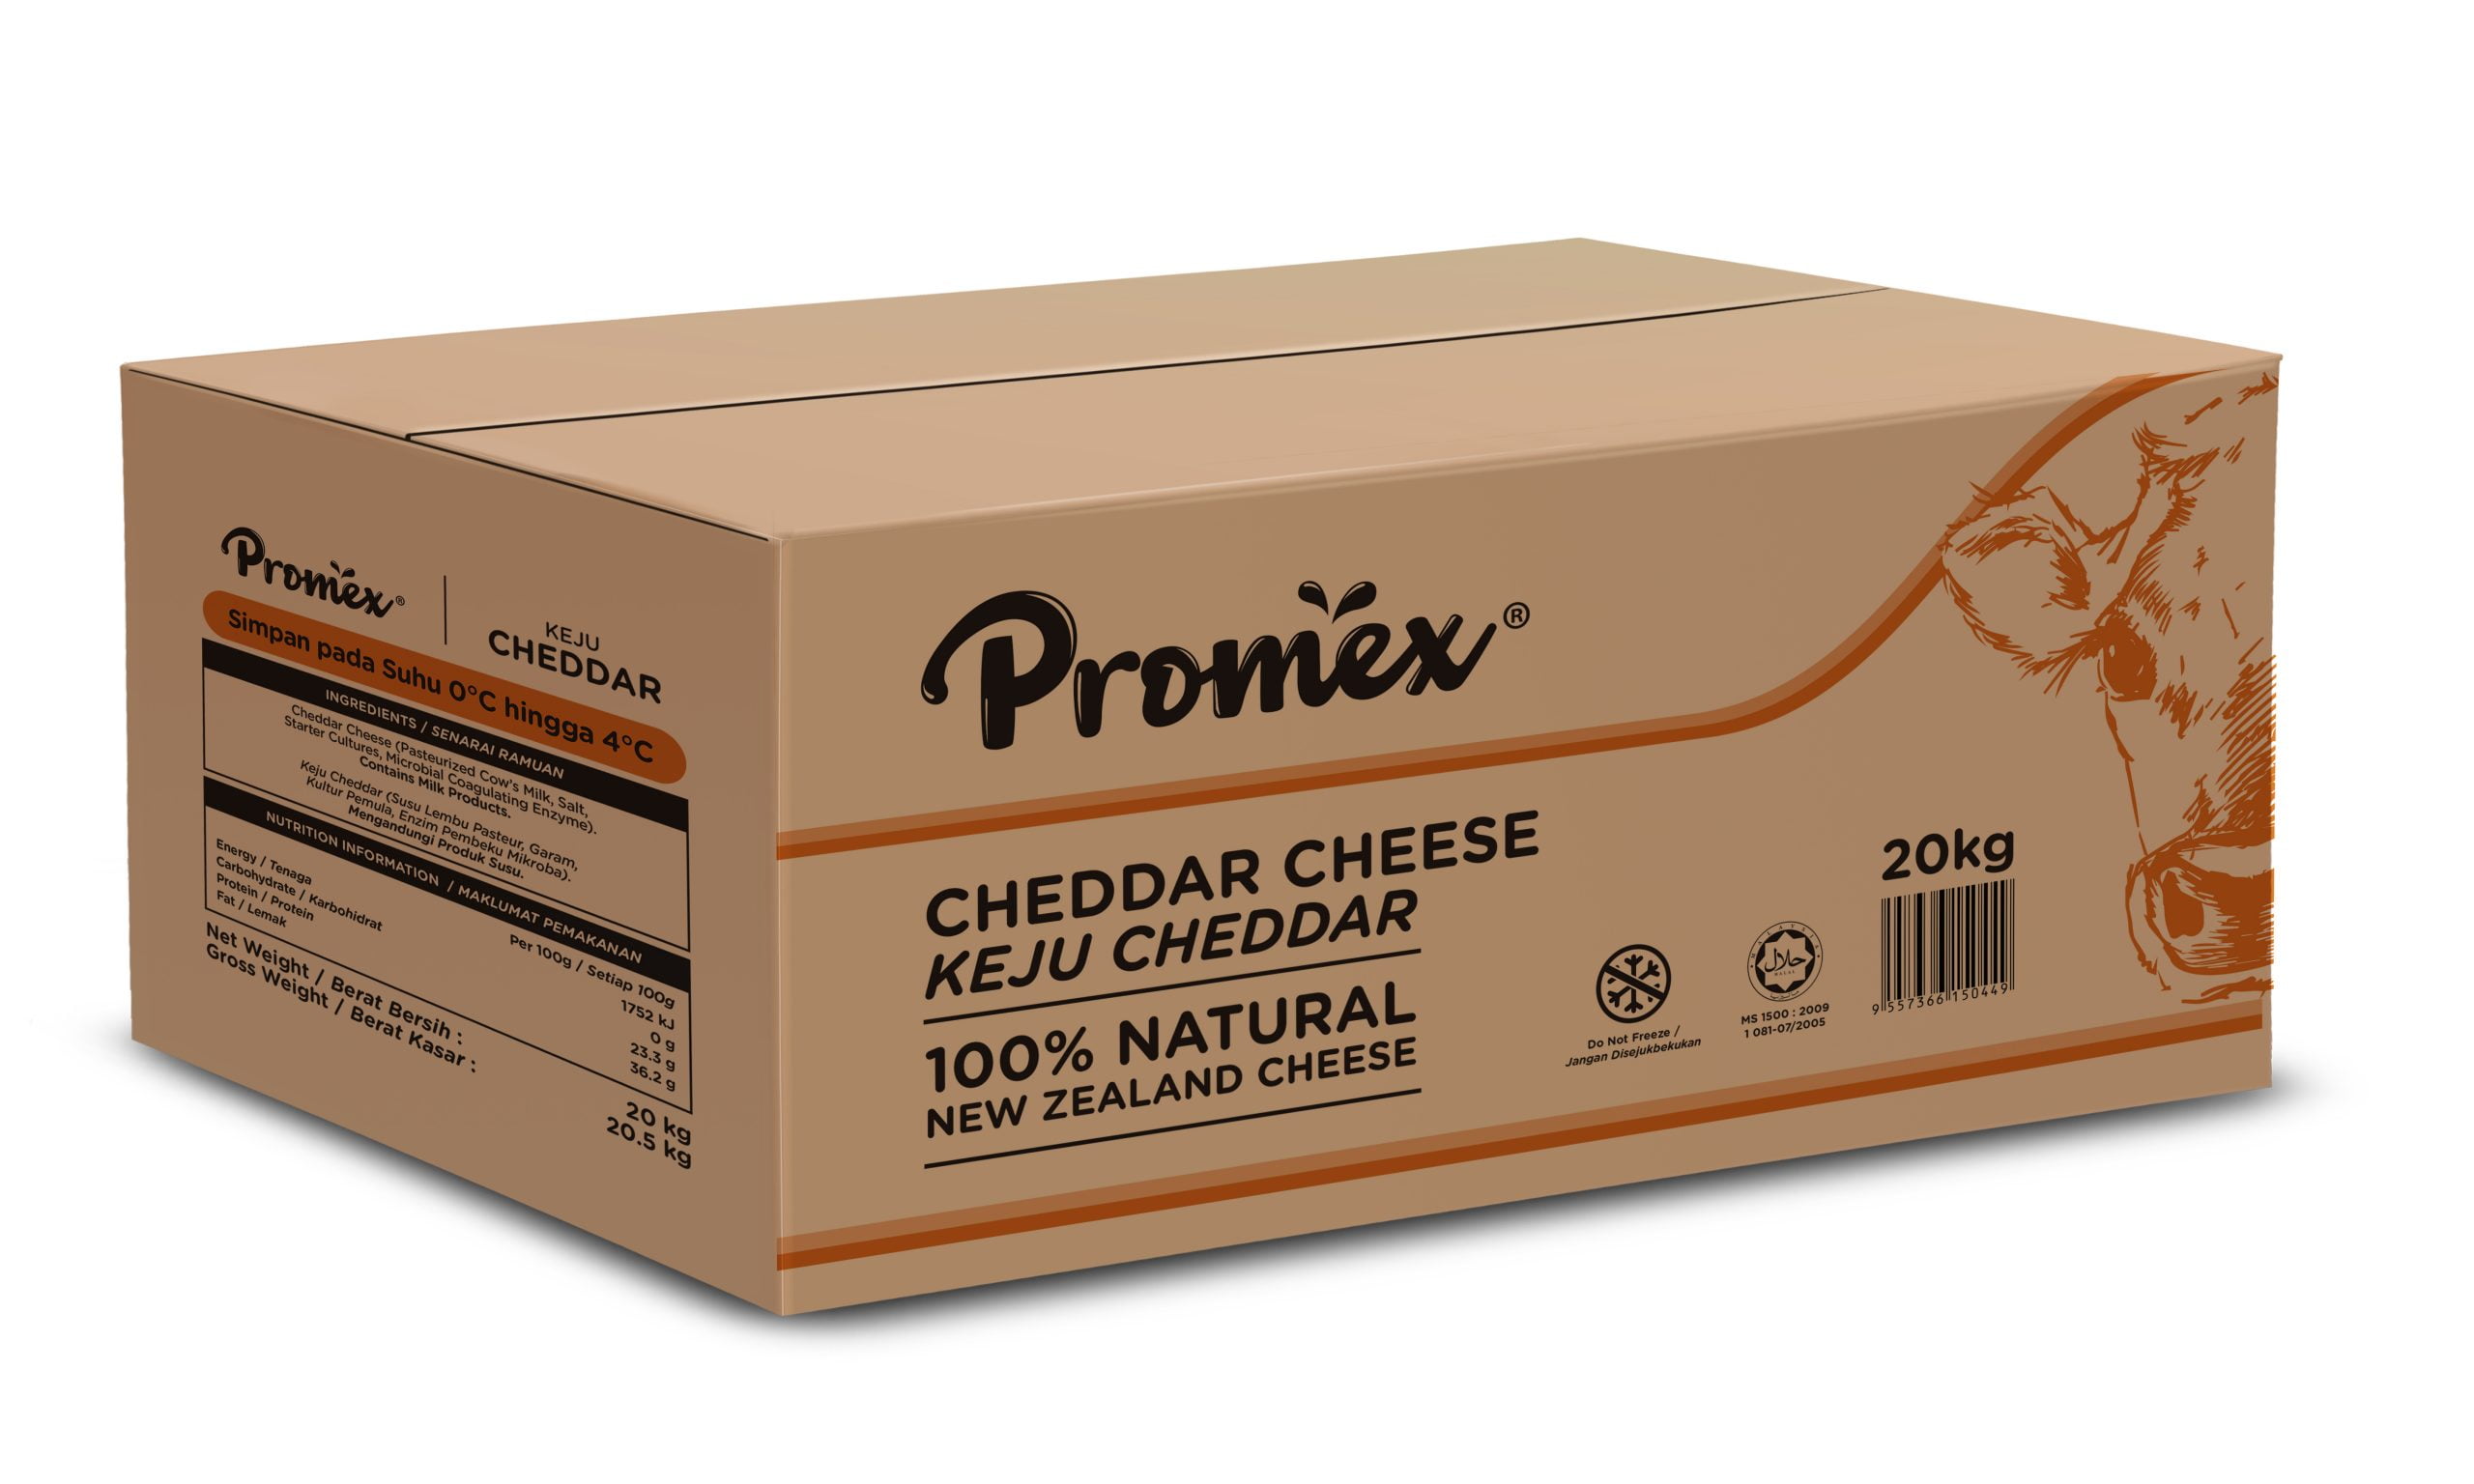 Promex Cheddar Cheese 20kg Carton